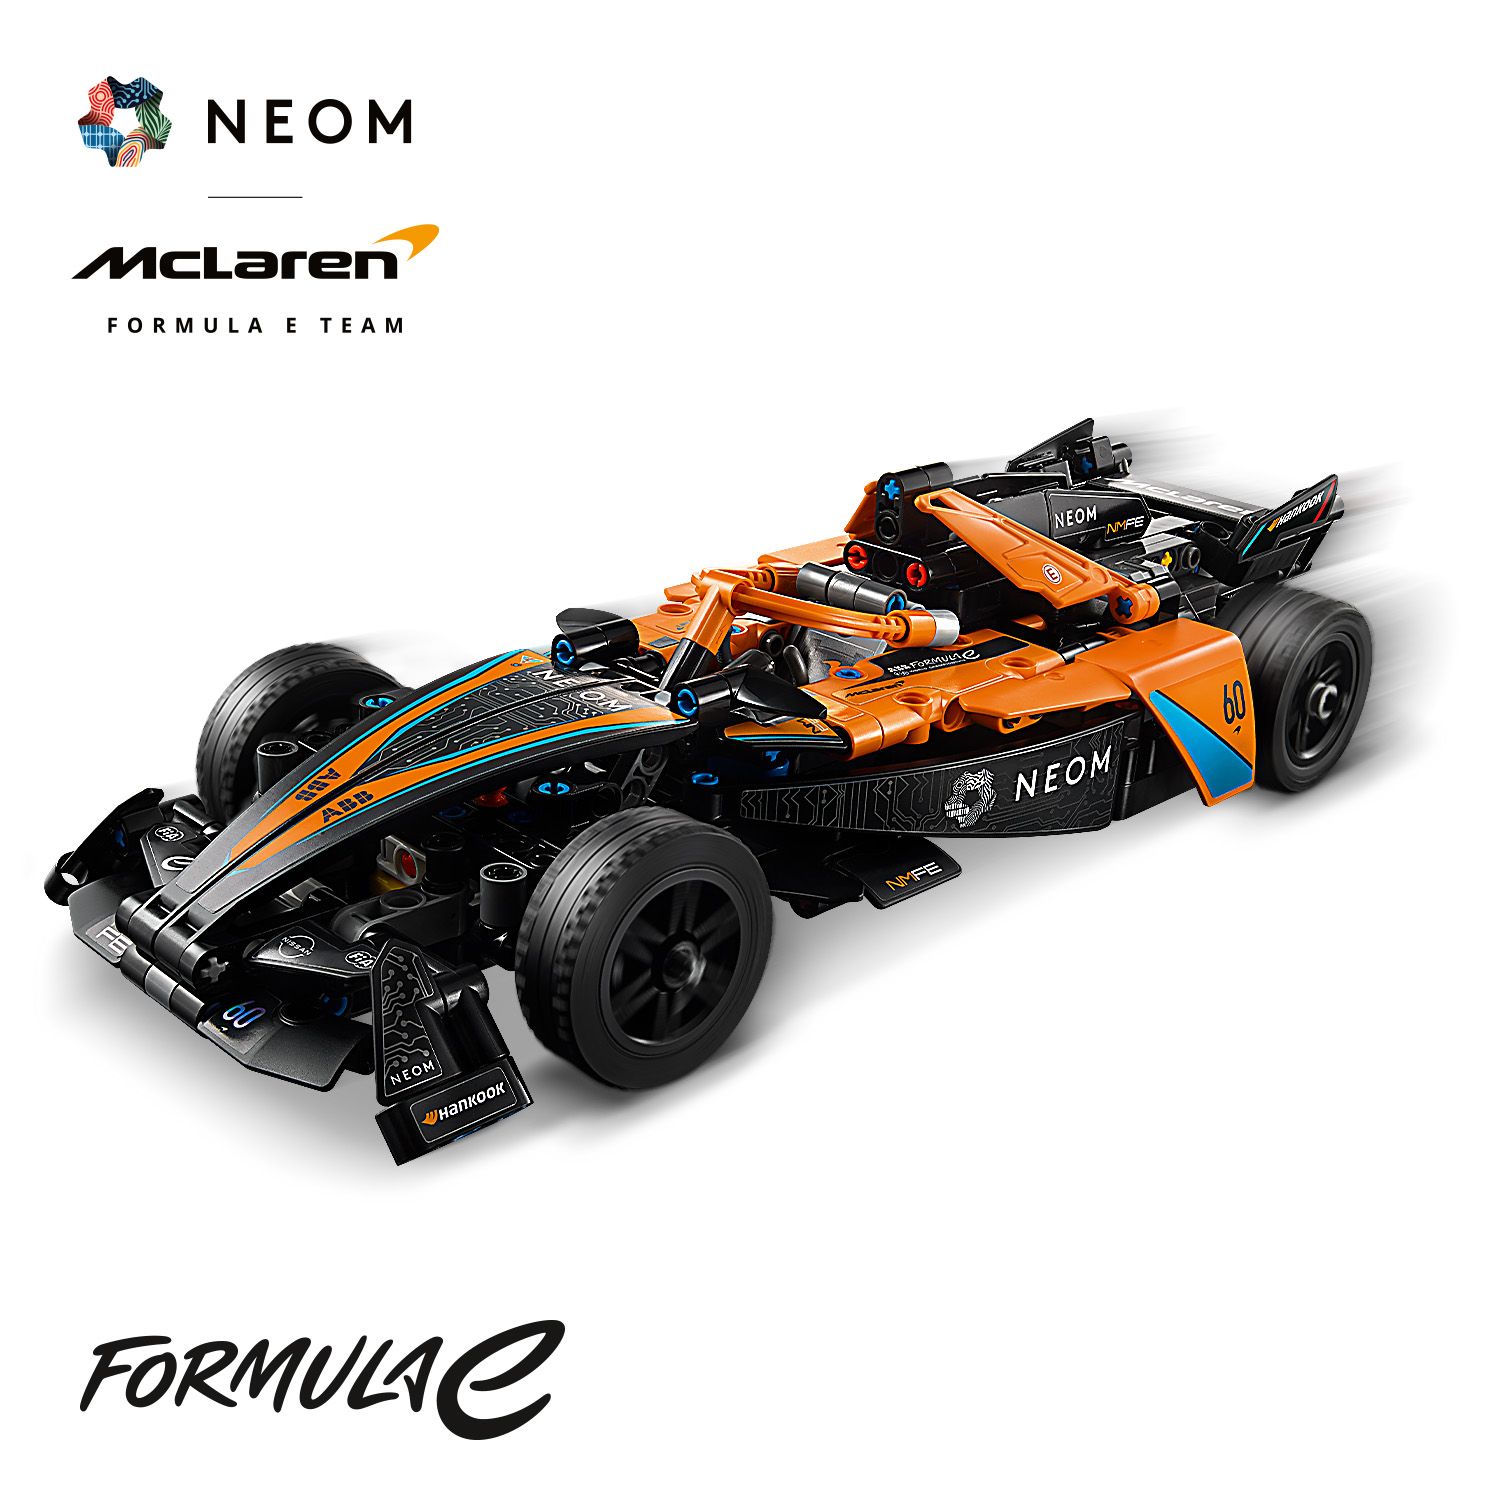 Představte si, že závodíte s týmem McLaren